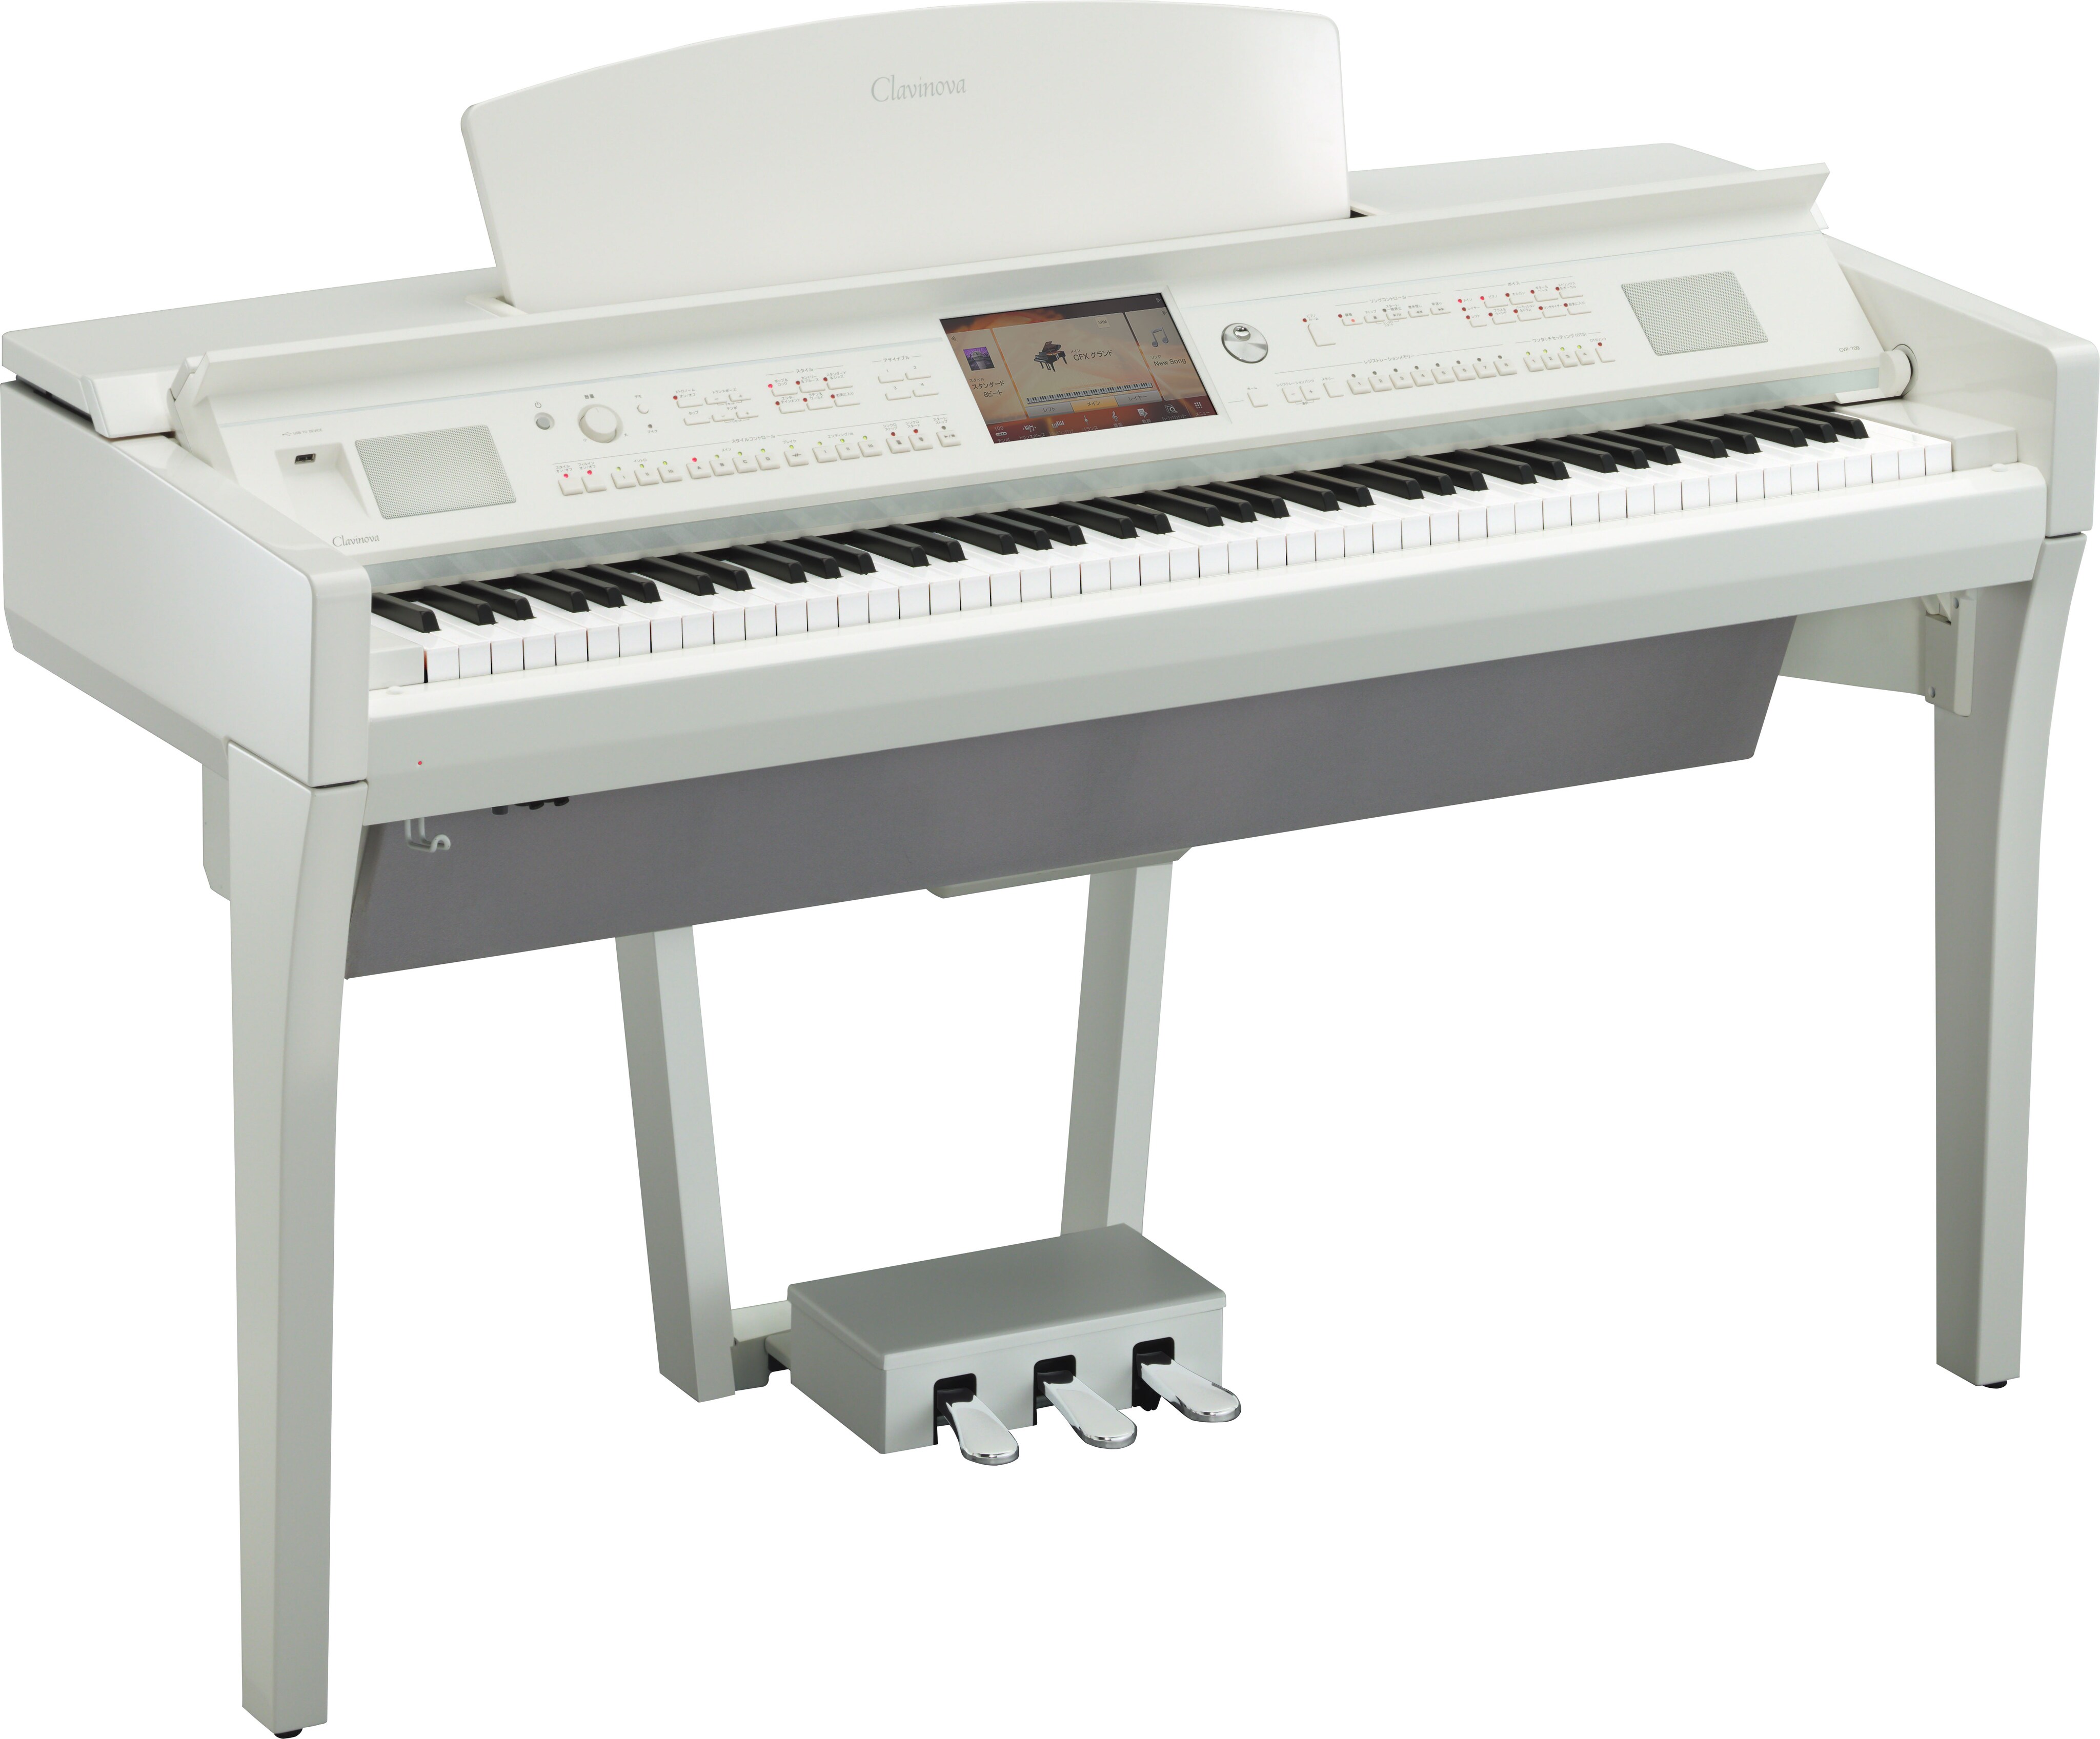 送料無料 ヤマハ CVP-709PE クラビノーバ 定価61万円 電子ピアノ